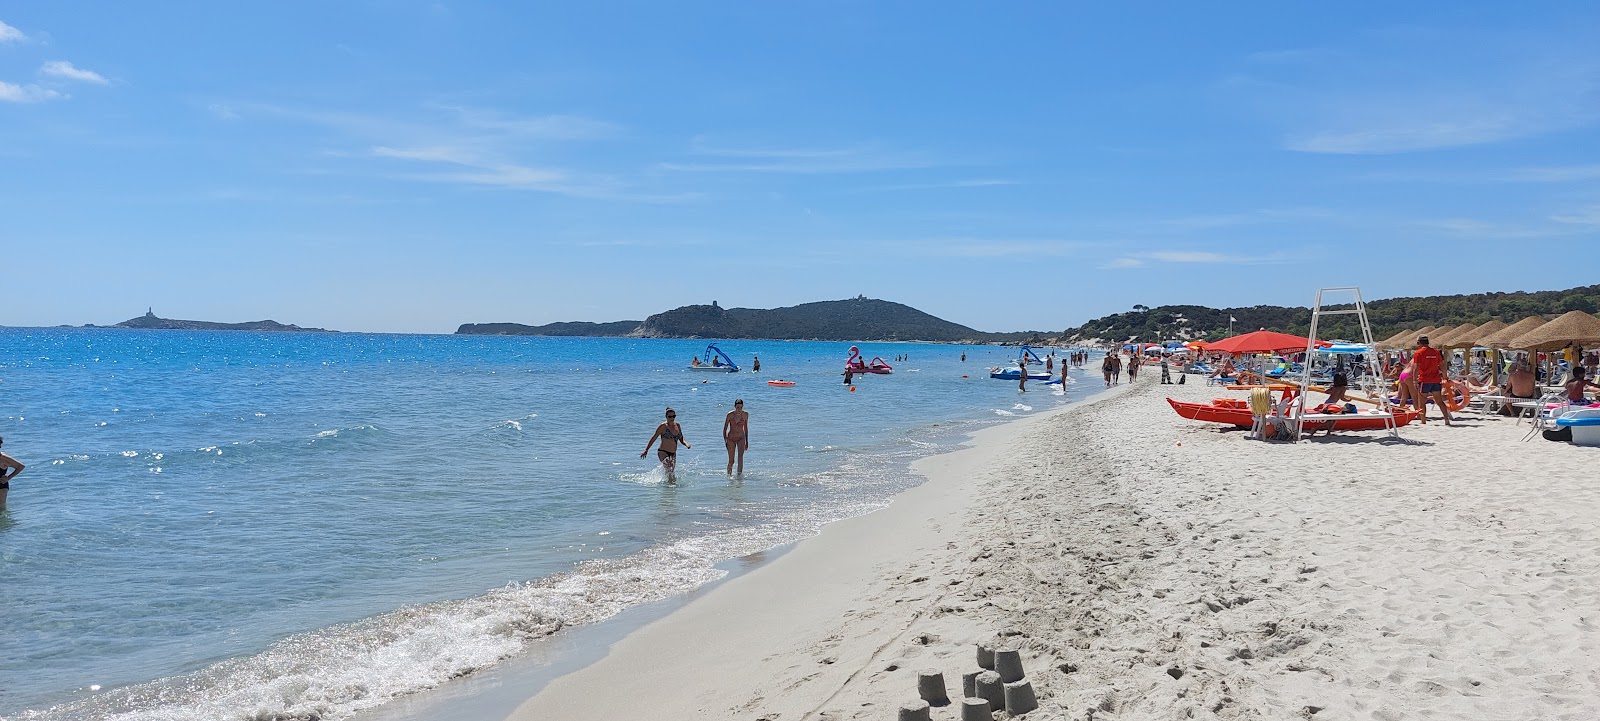 Foto af Spiaggia di Simius med lang lige kyst